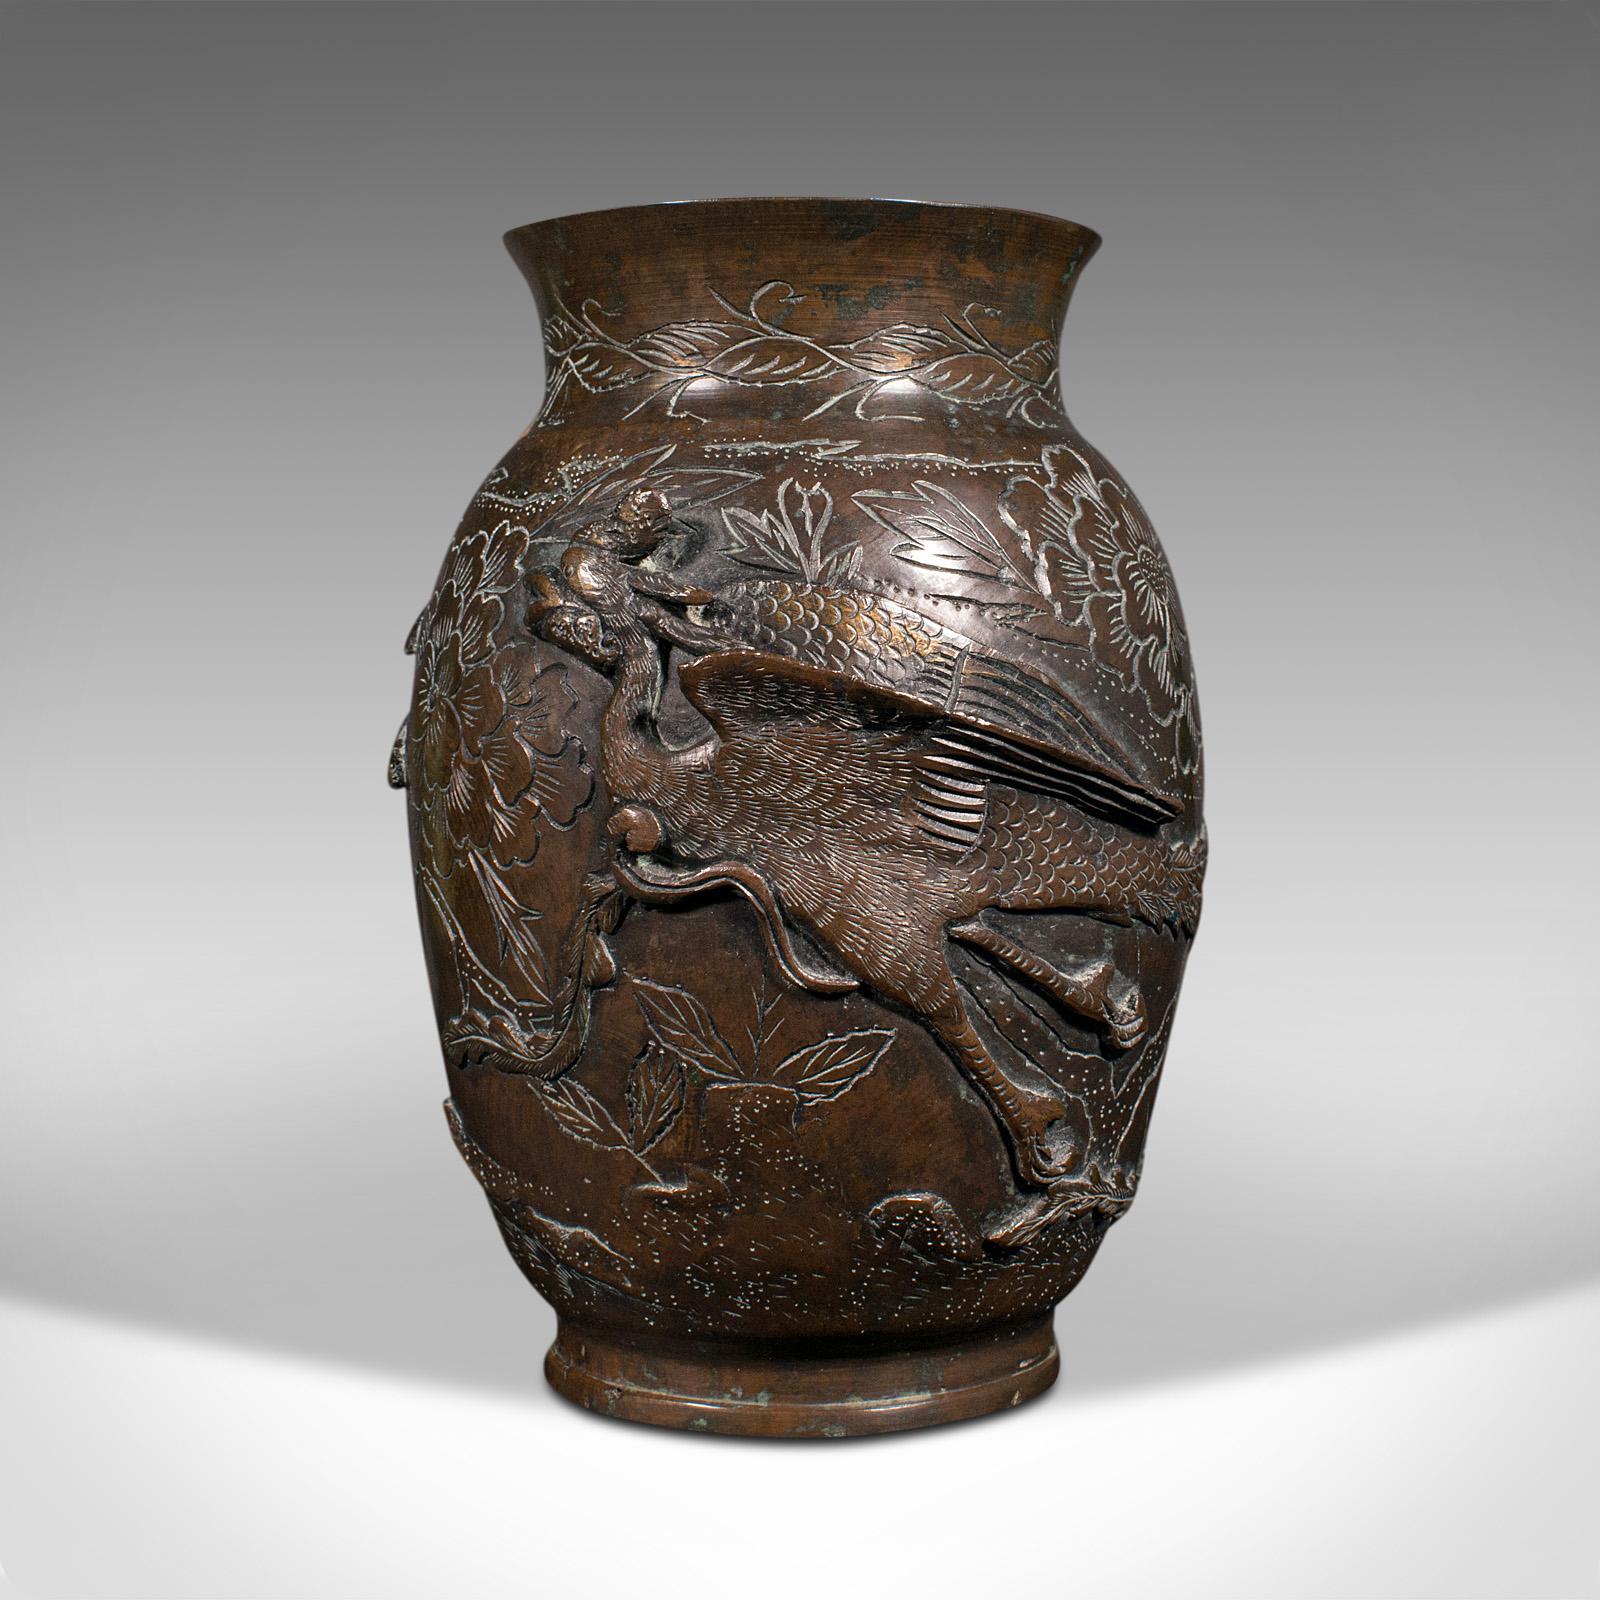 Il s'agit d'un ancien vase décoratif à bouquets. Une urne japonaise en bronze de la période Meiji, datant de la fin du XIXe siècle, vers 1900.

Orné de superbes figures d'oiseaux en relief sur une merveilleuse forme de bulbe.
Présente une patine